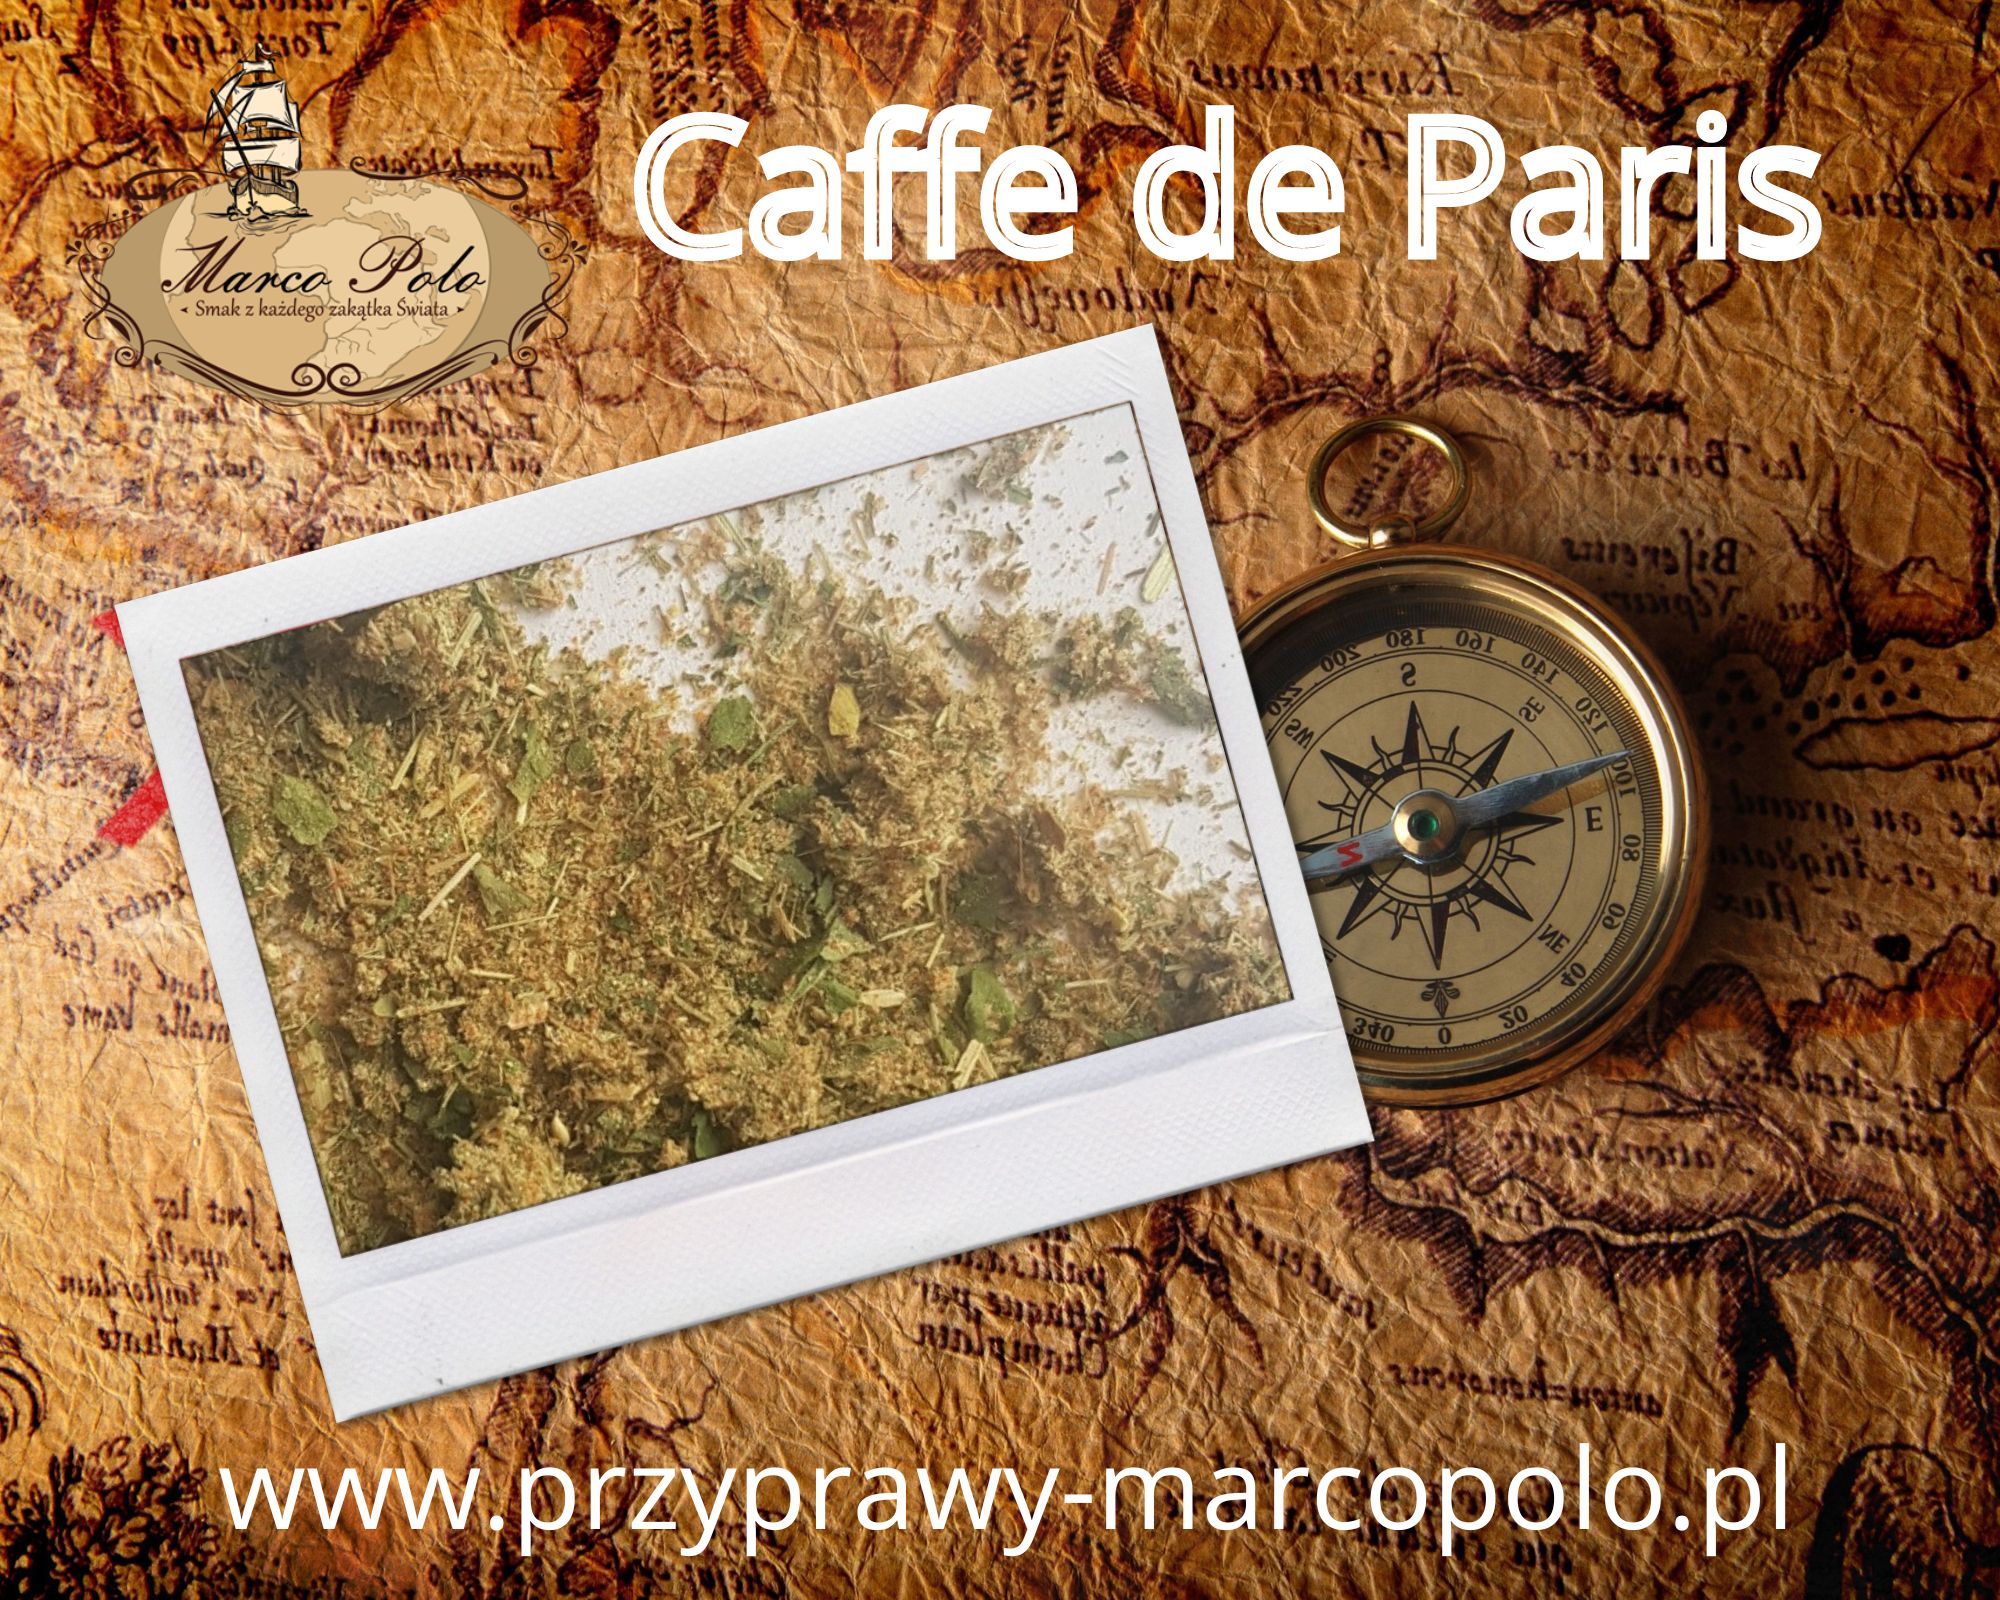 Przyprawa Caffe de Paris